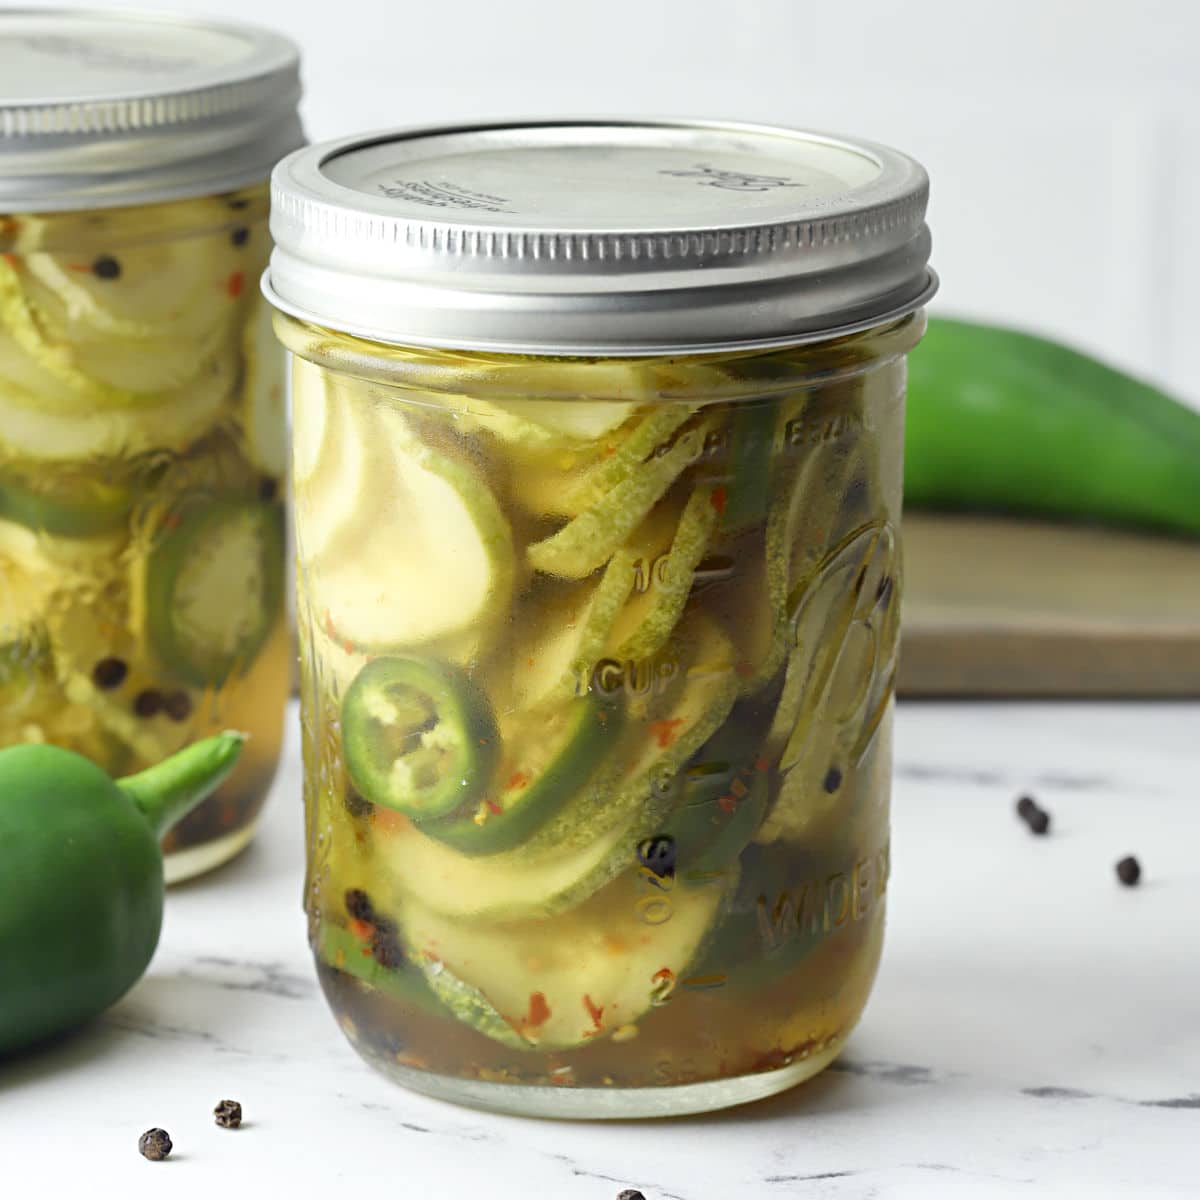 Refrigerator pickles #pickles #heinz #refrigeratorpickles #spicypickle